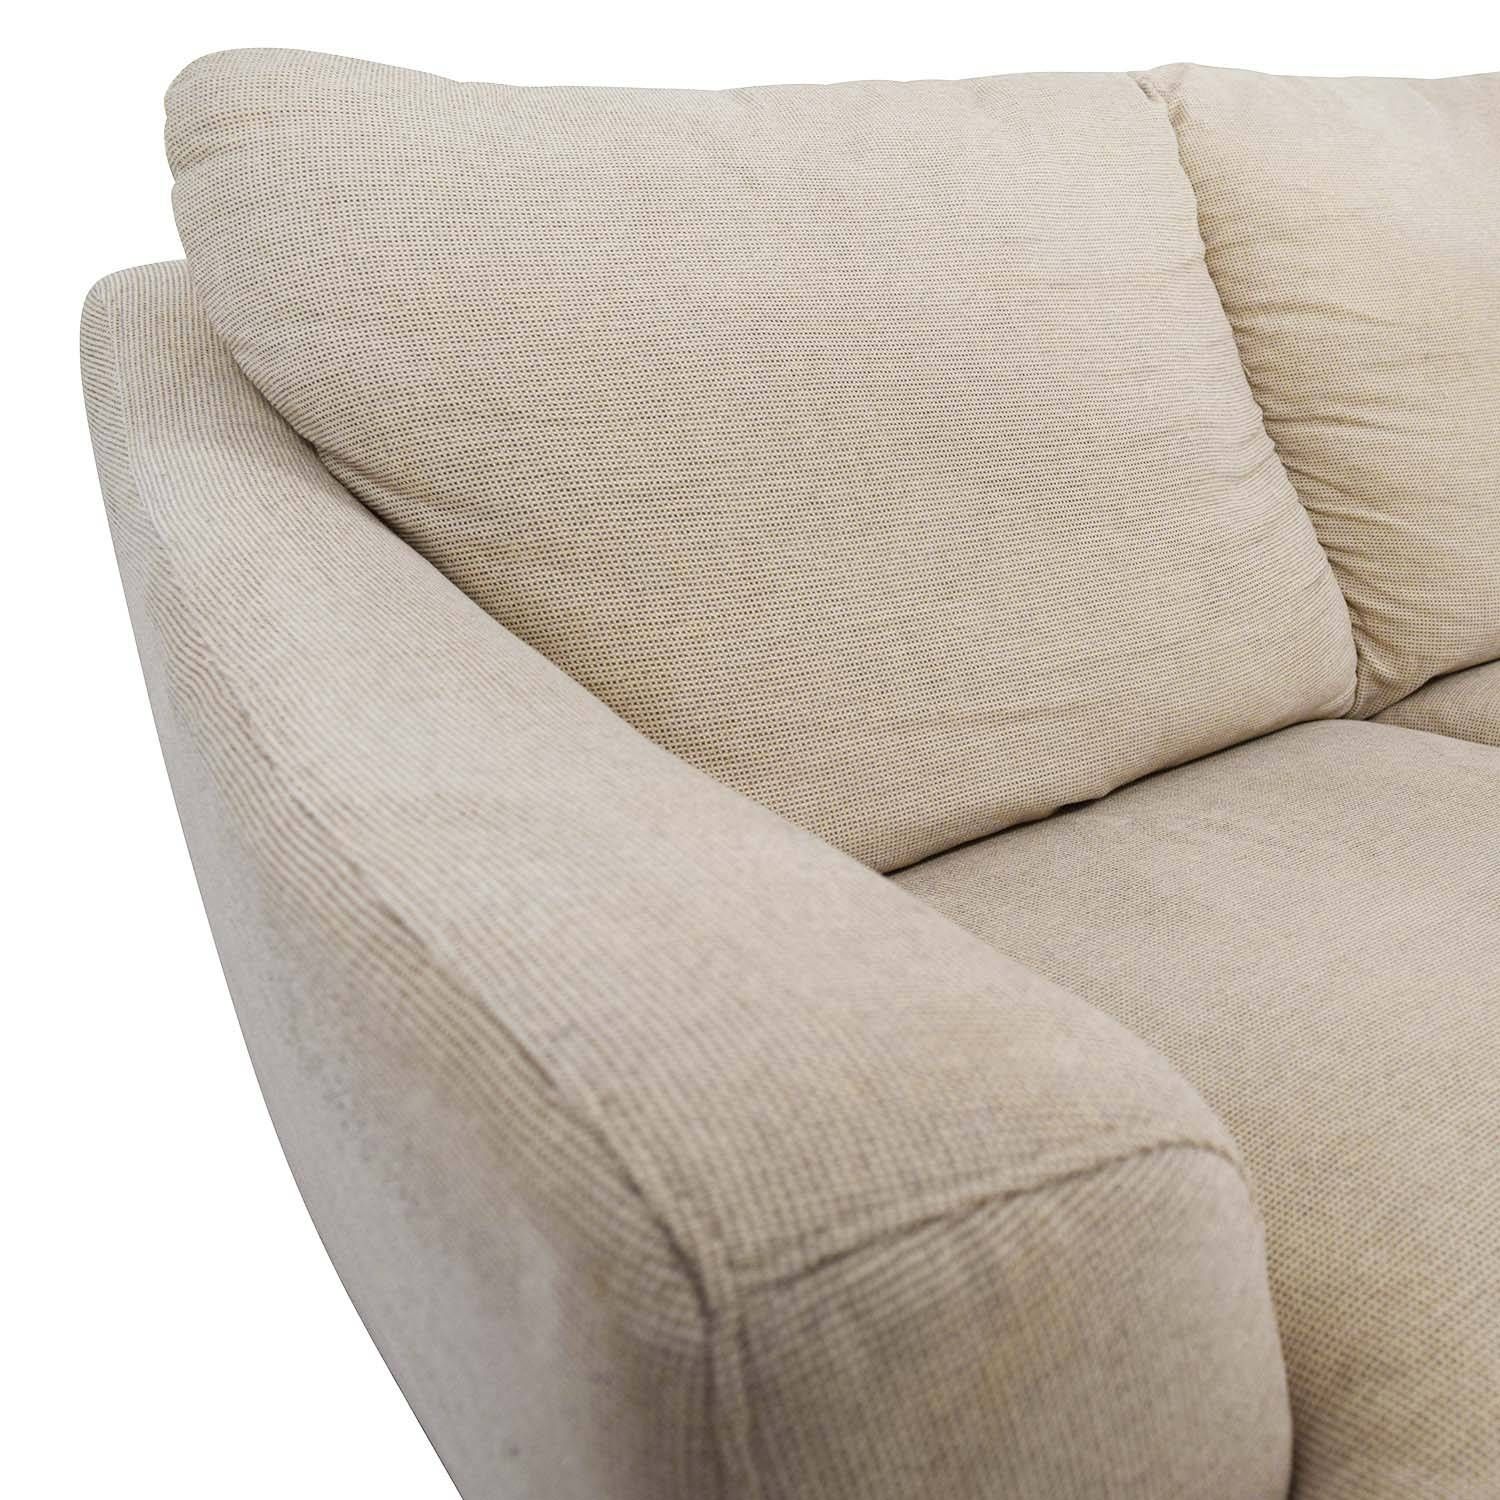 56% Off – Italsofa Italsofa Beige Tweed Three Cushion Fabric Sofa Within Tweed Fabric Sofas (View 20 of 30)